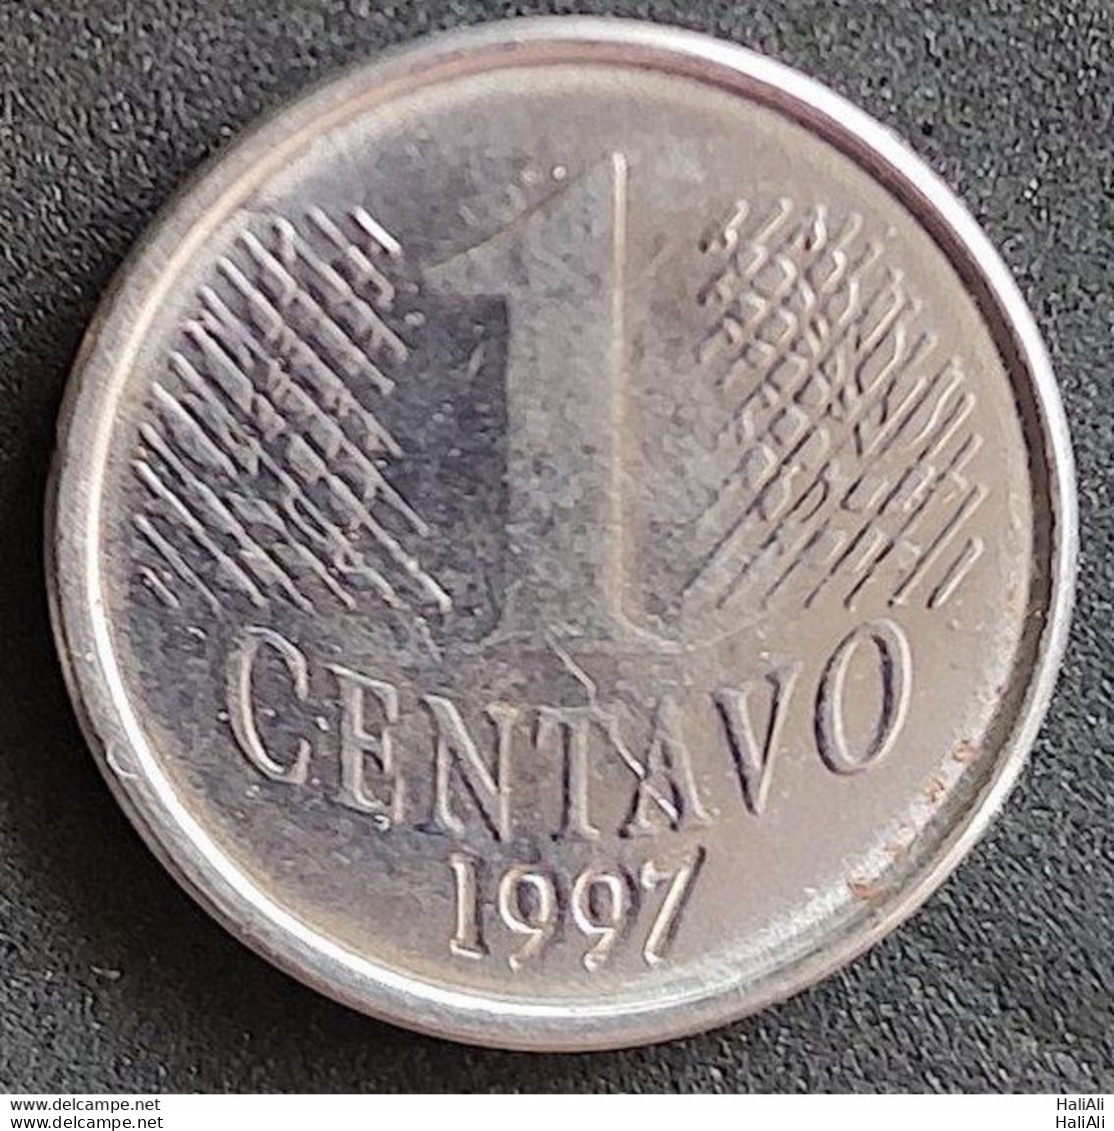 Coin Brazil Moeda Brasil 1997 1 Centavo 1 - Brasil